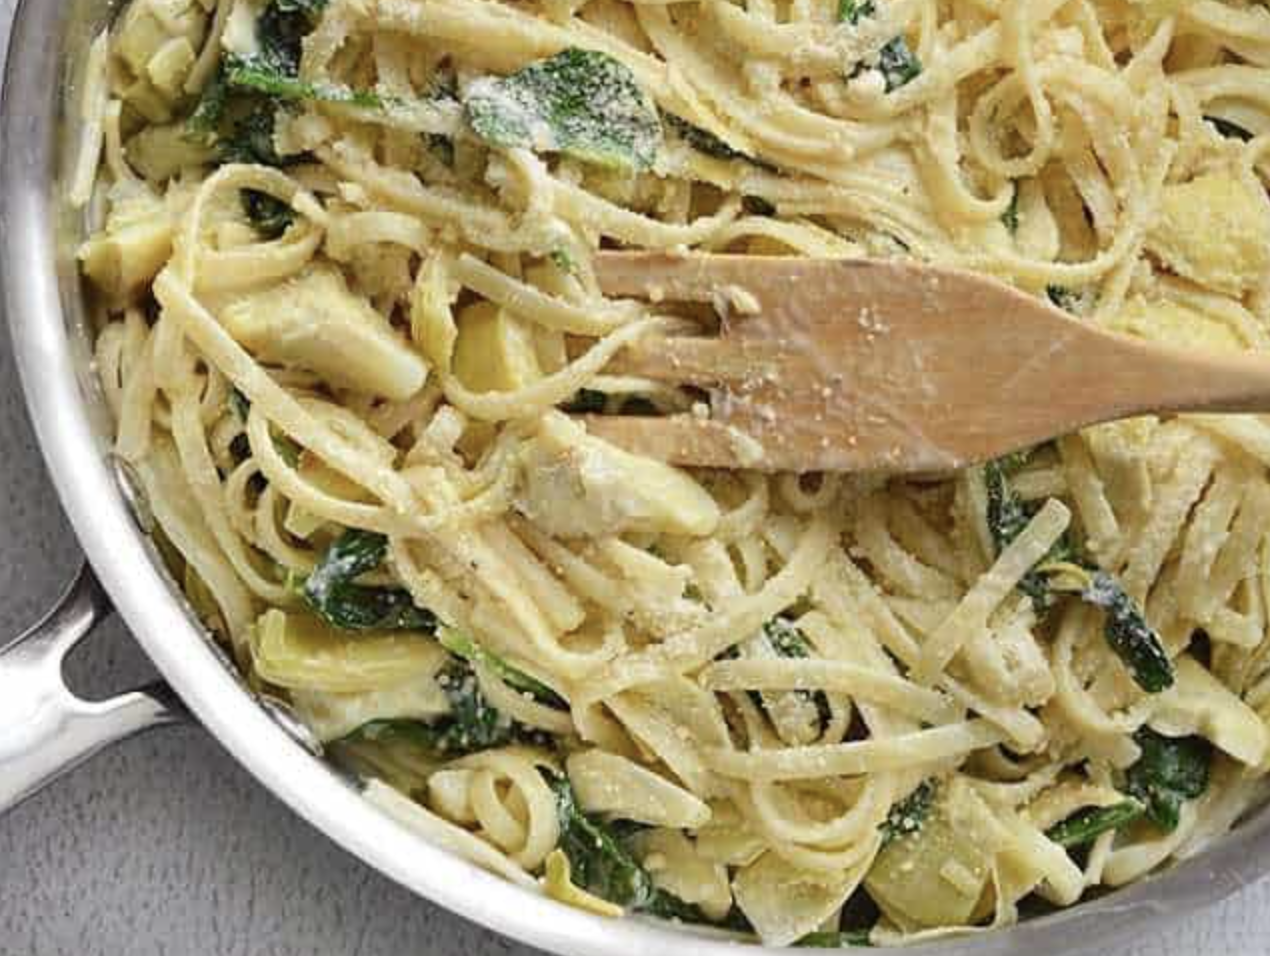 Spinach and artichoke pasta